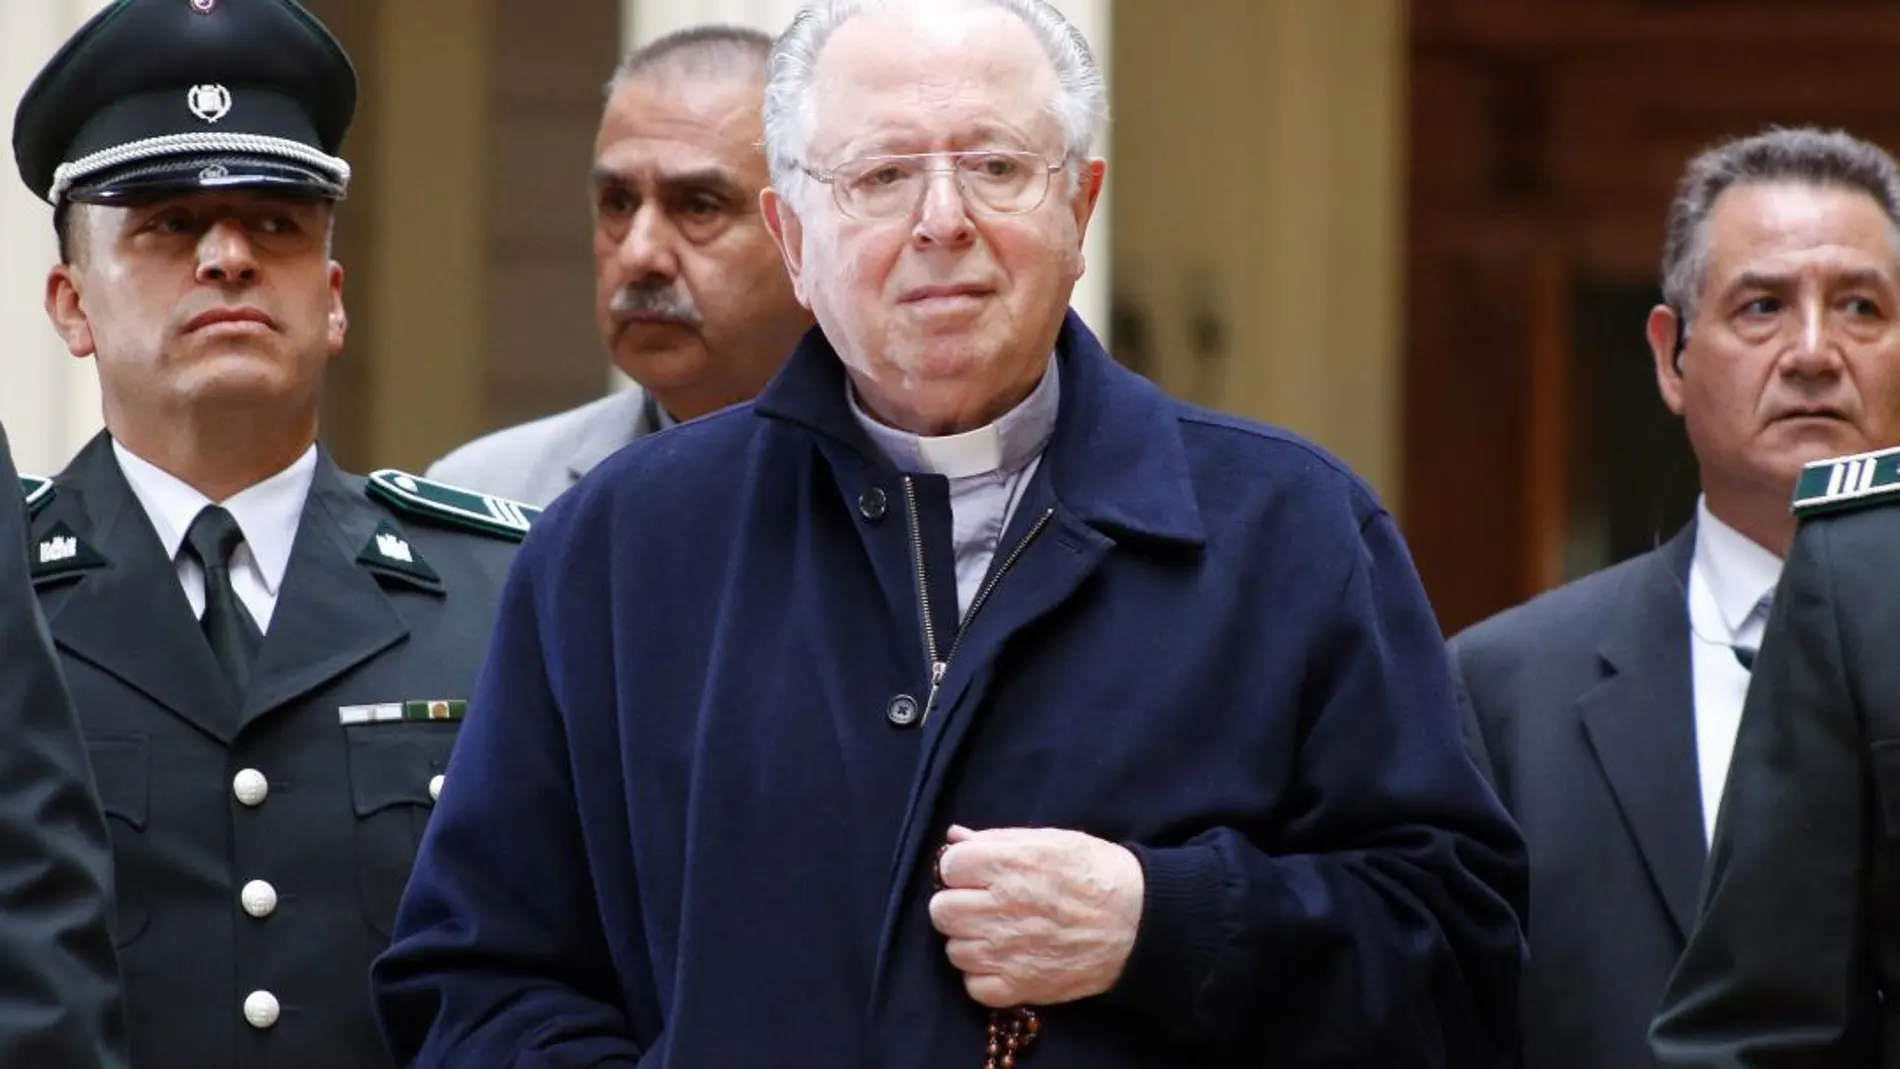 Fotografía fechada el 11 de noviembre de 2015 que muestra al sacerdote Fernando Karadima Fariña (c) a su salida de la Corte de Apelaciones en Santiago (Chile).